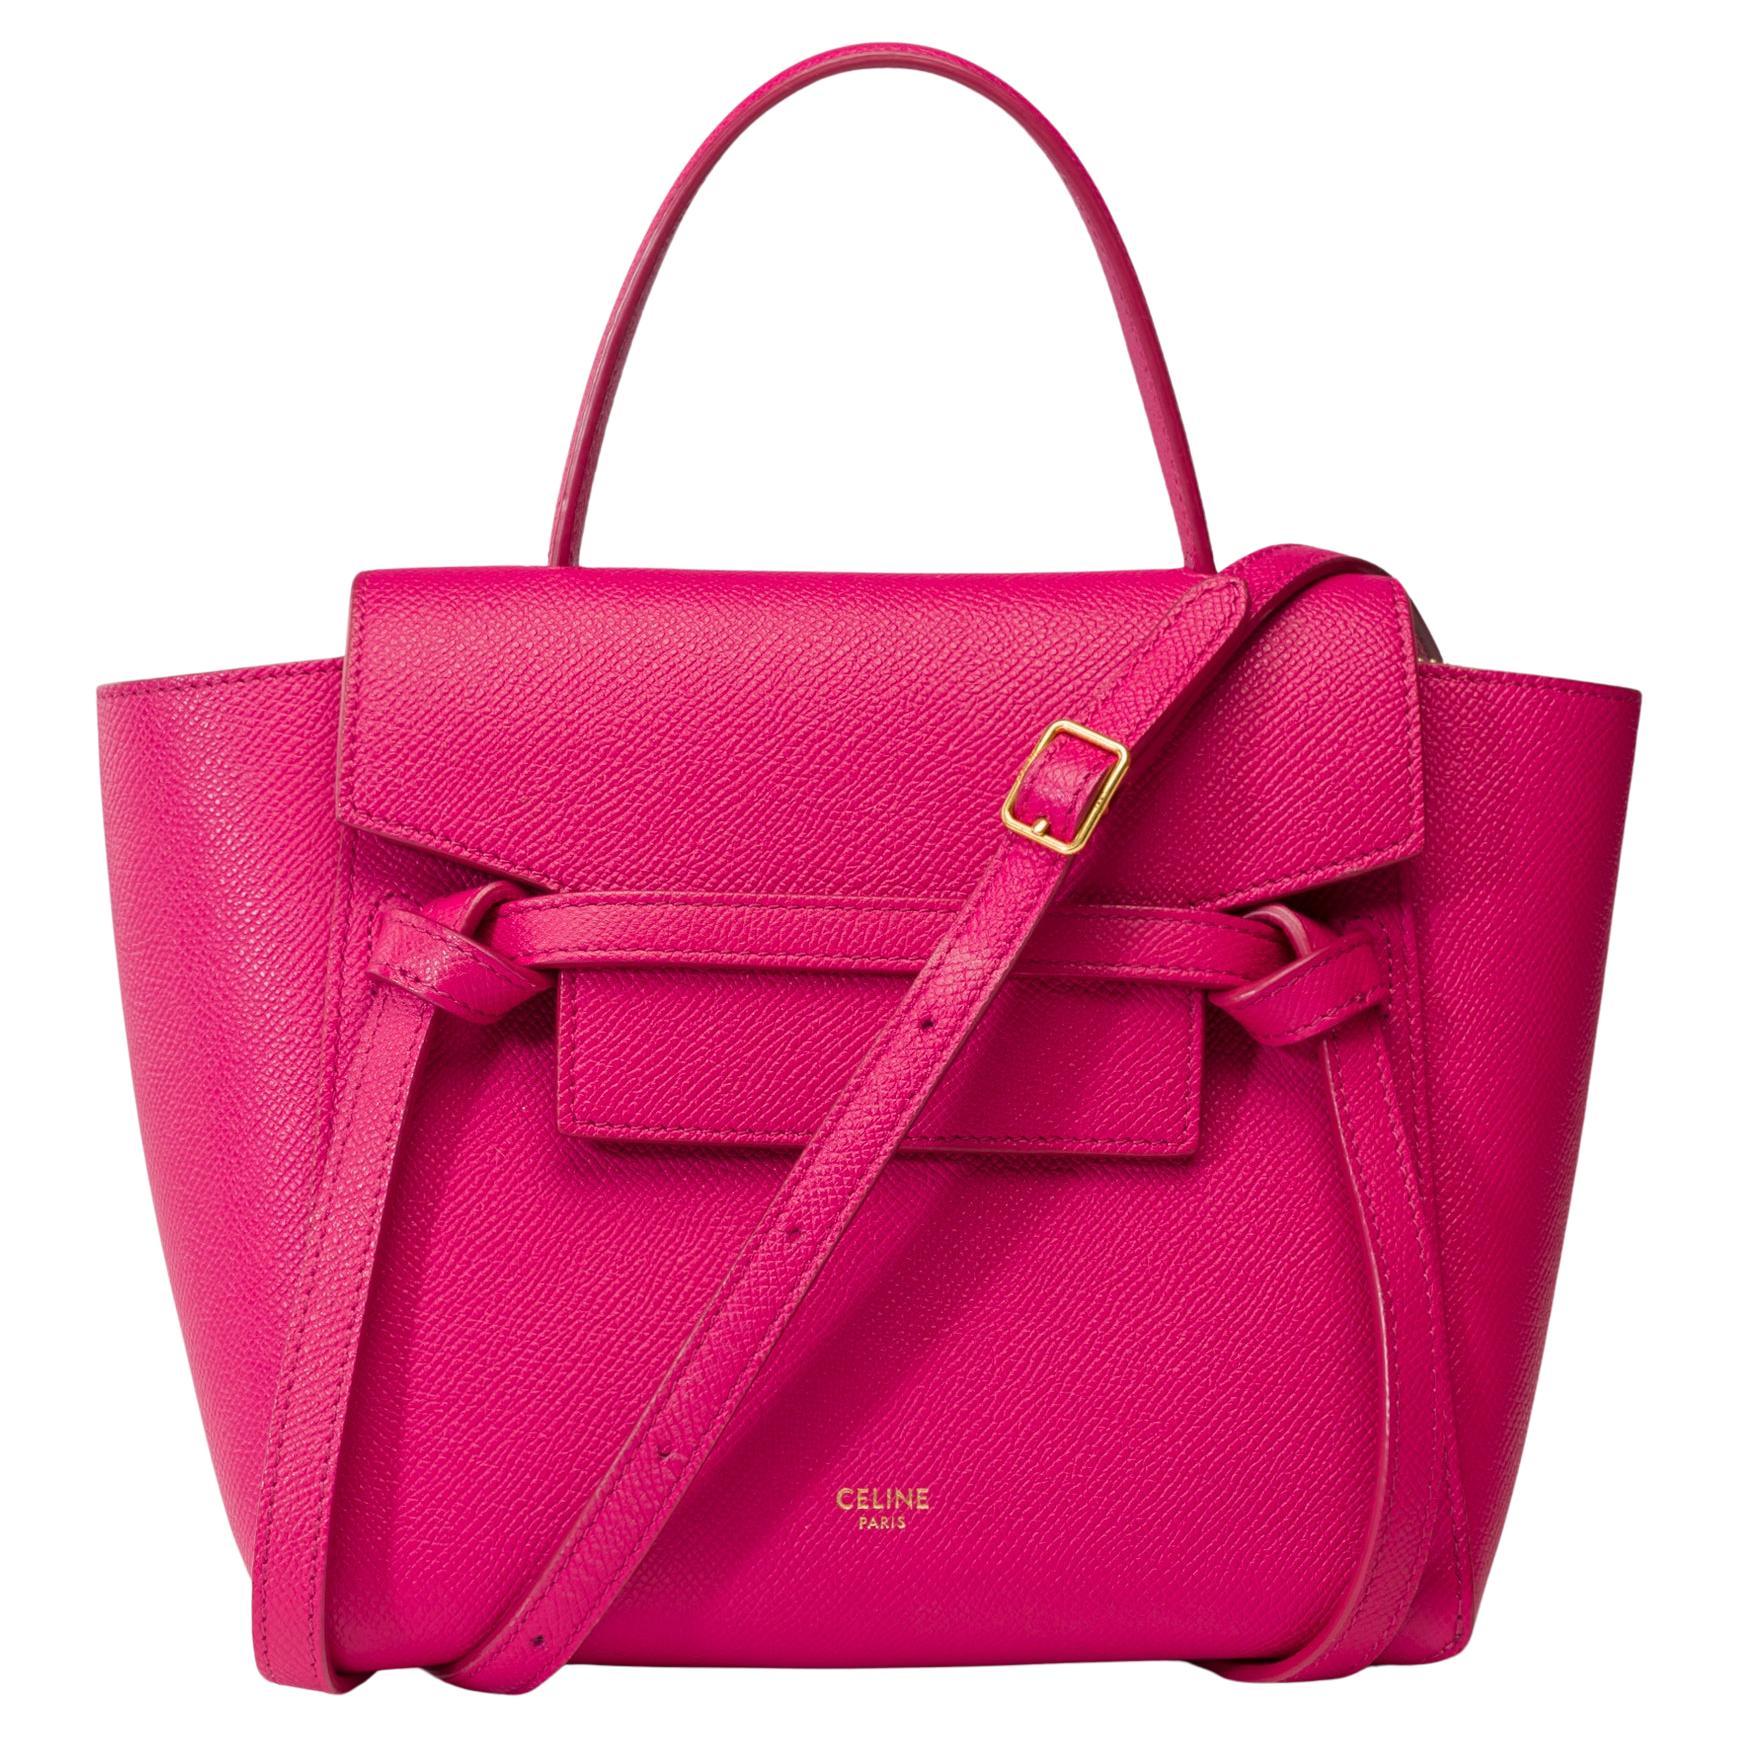 Celine Belt Nano handbag strap in pink calf leather, GHW For Sale